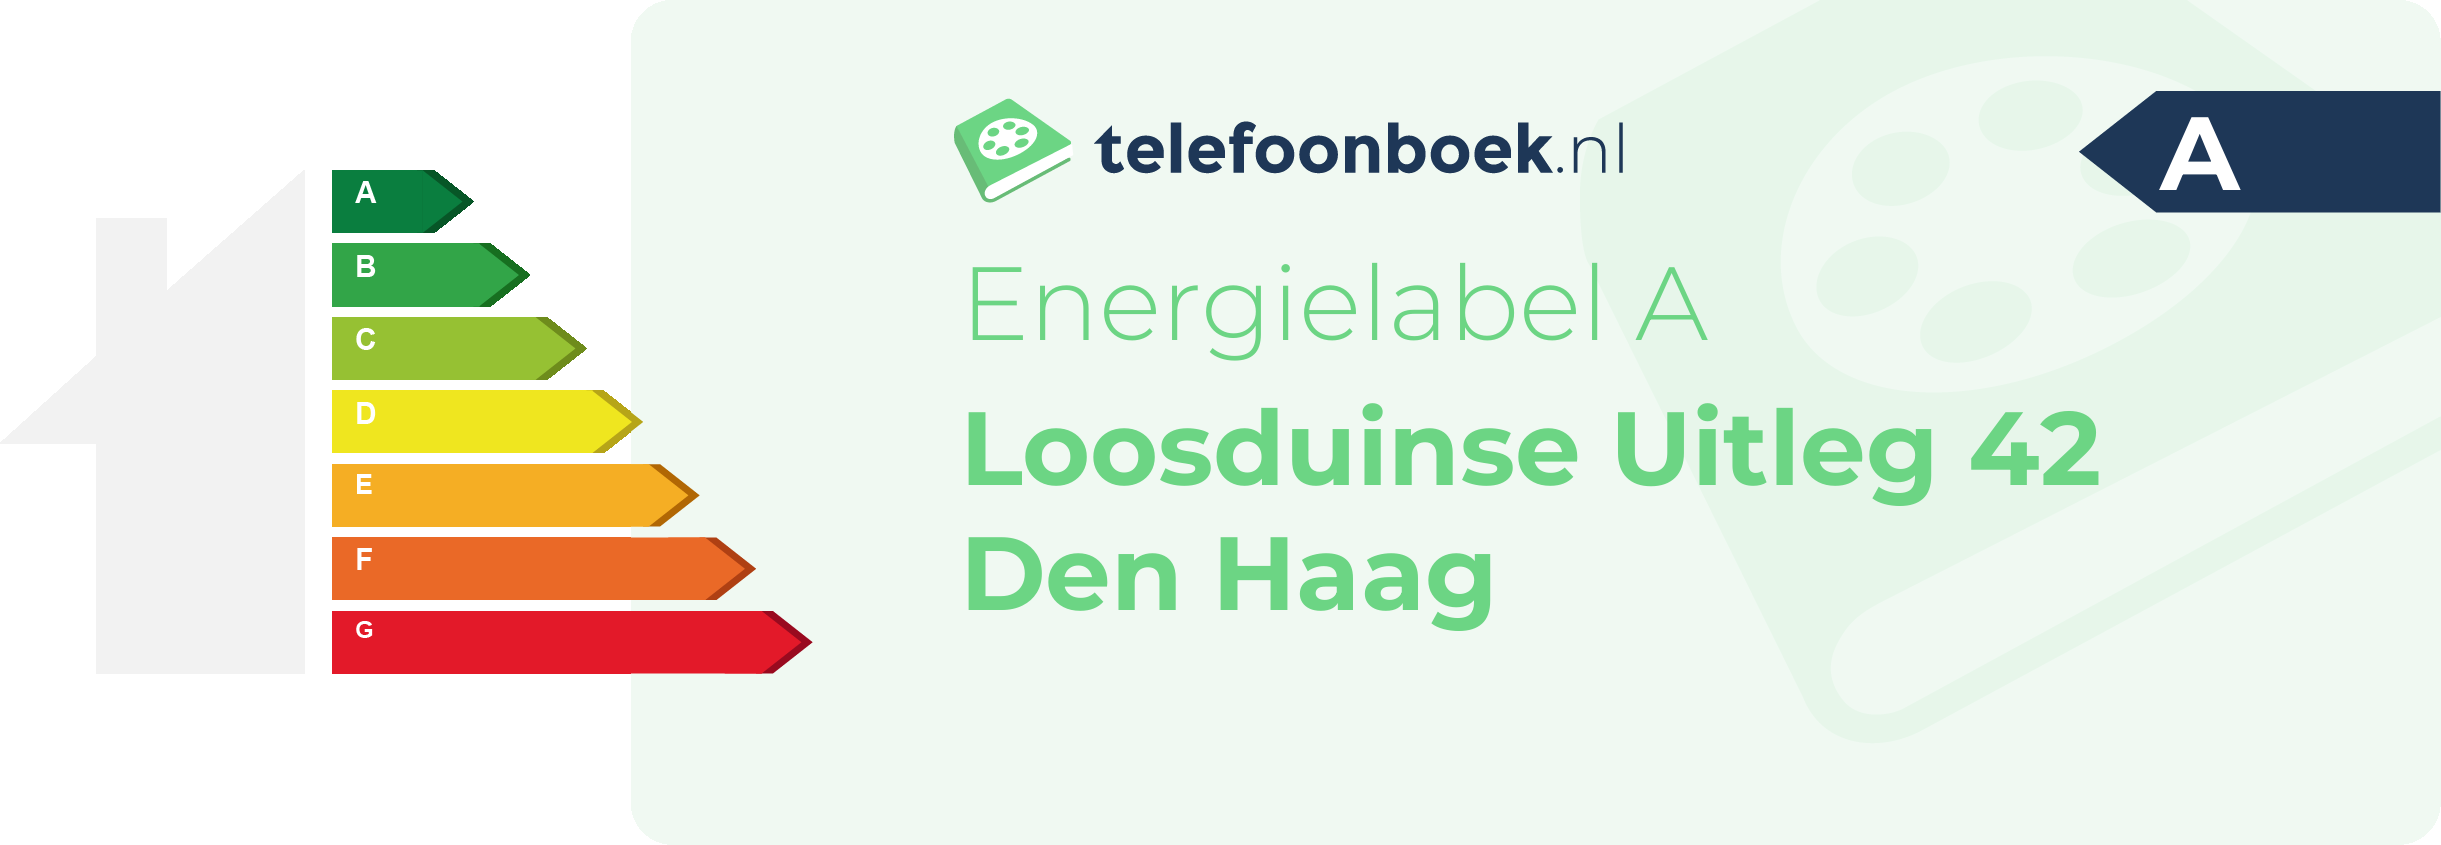 Energielabel Loosduinse Uitleg 42 Den Haag